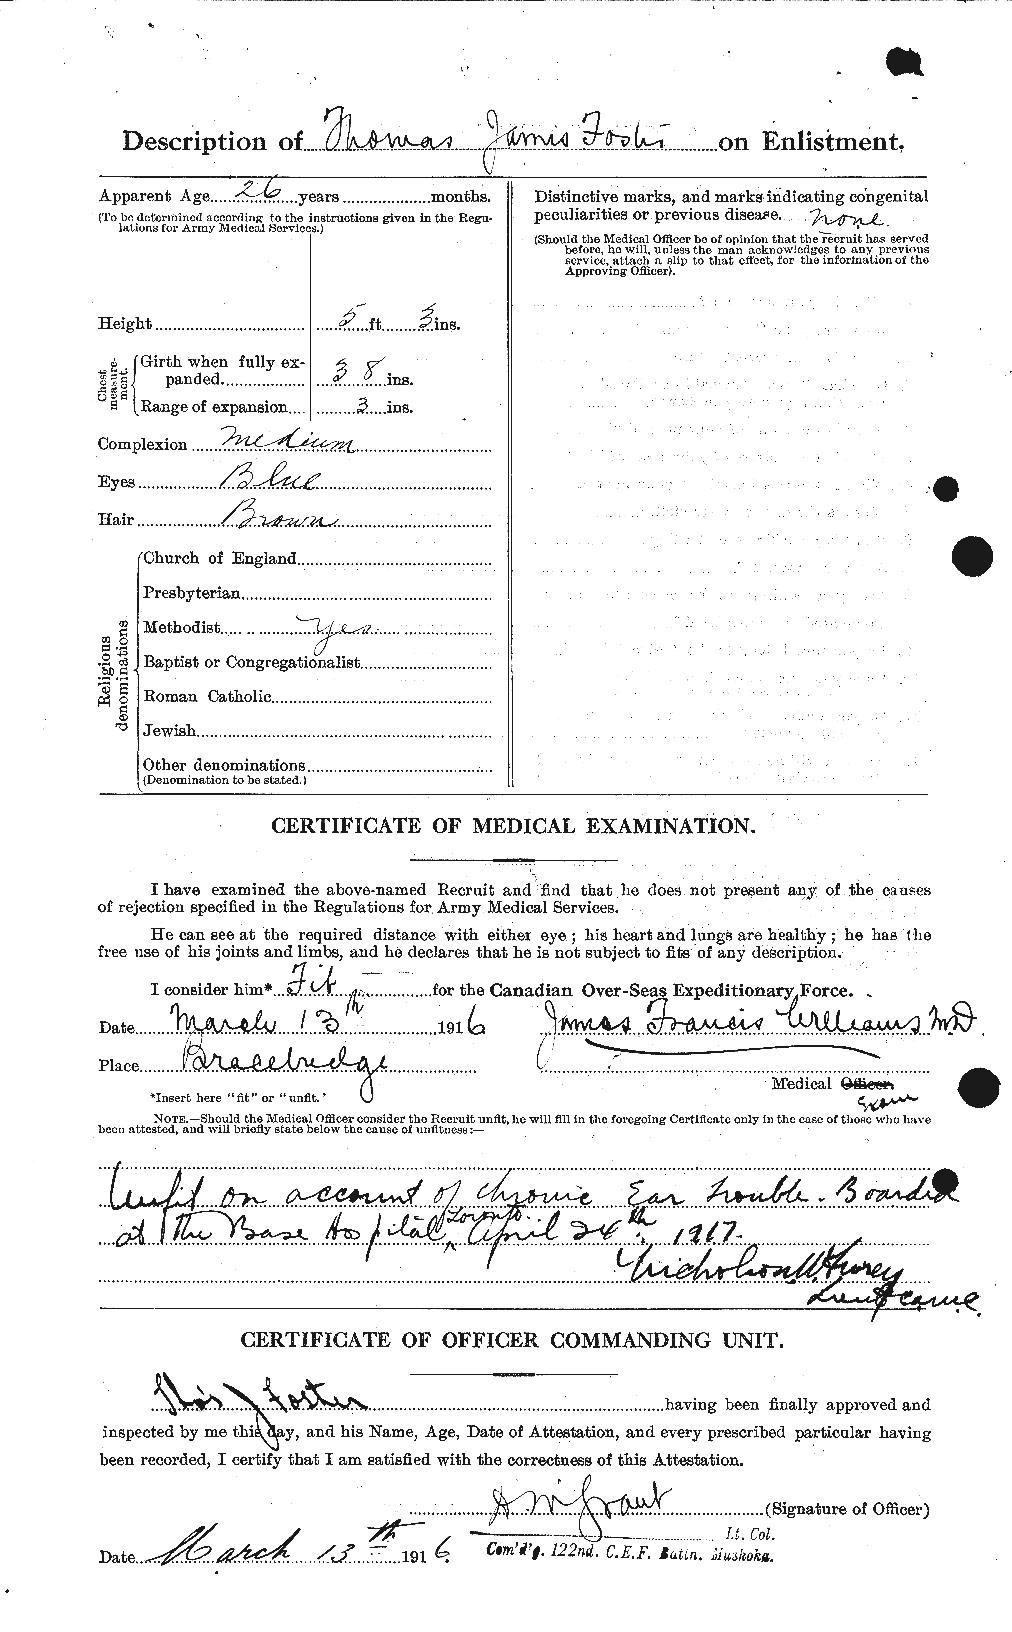 Dossiers du Personnel de la Première Guerre mondiale - CEC 335241b